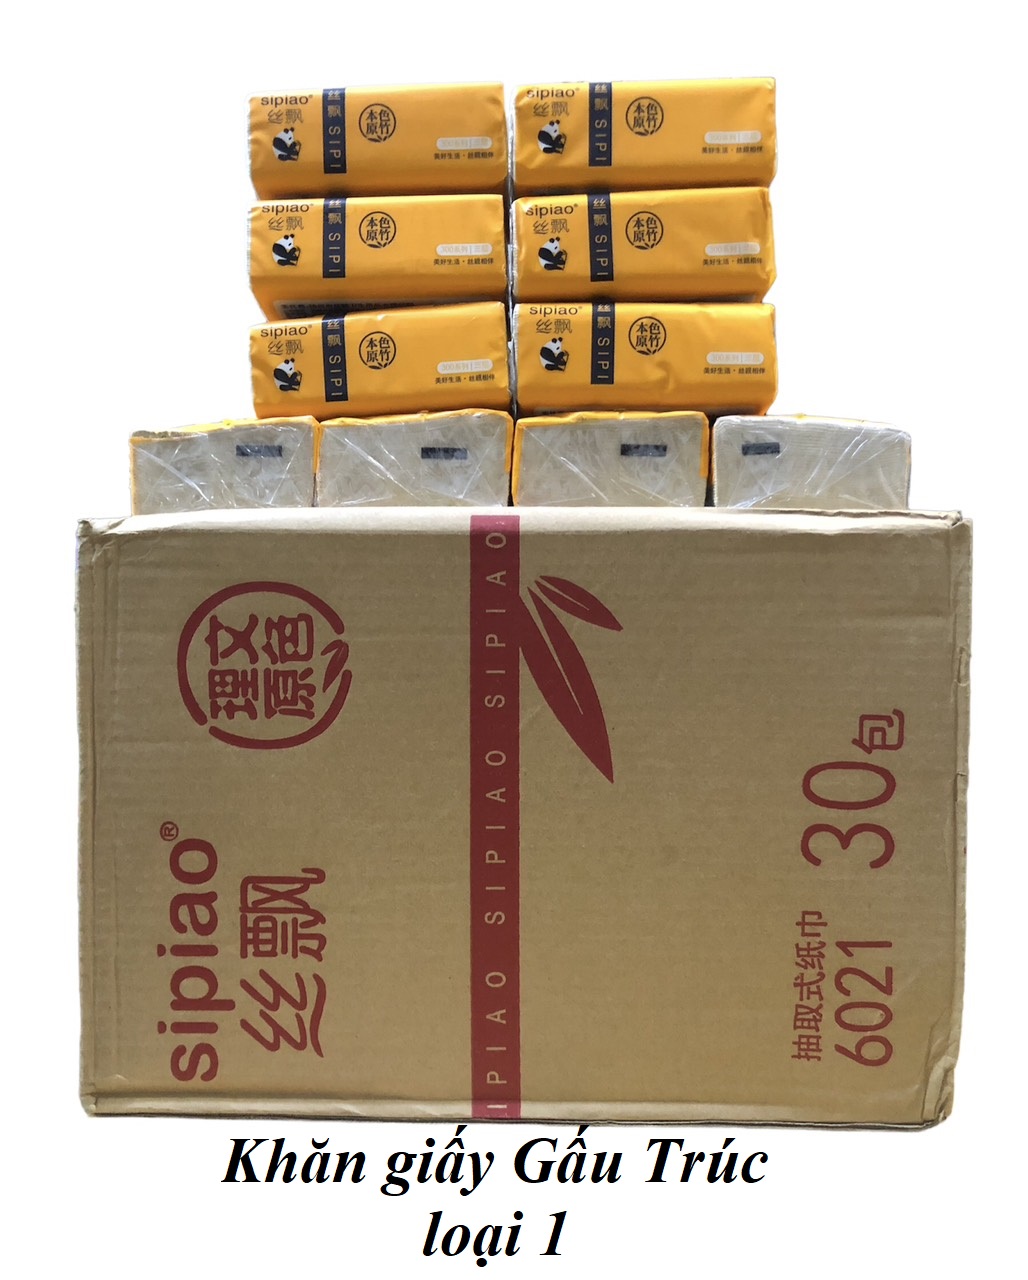 Khăn giấy Gấu Trúc Sipiao siêu dai loại TỐT, thùng 30 gói